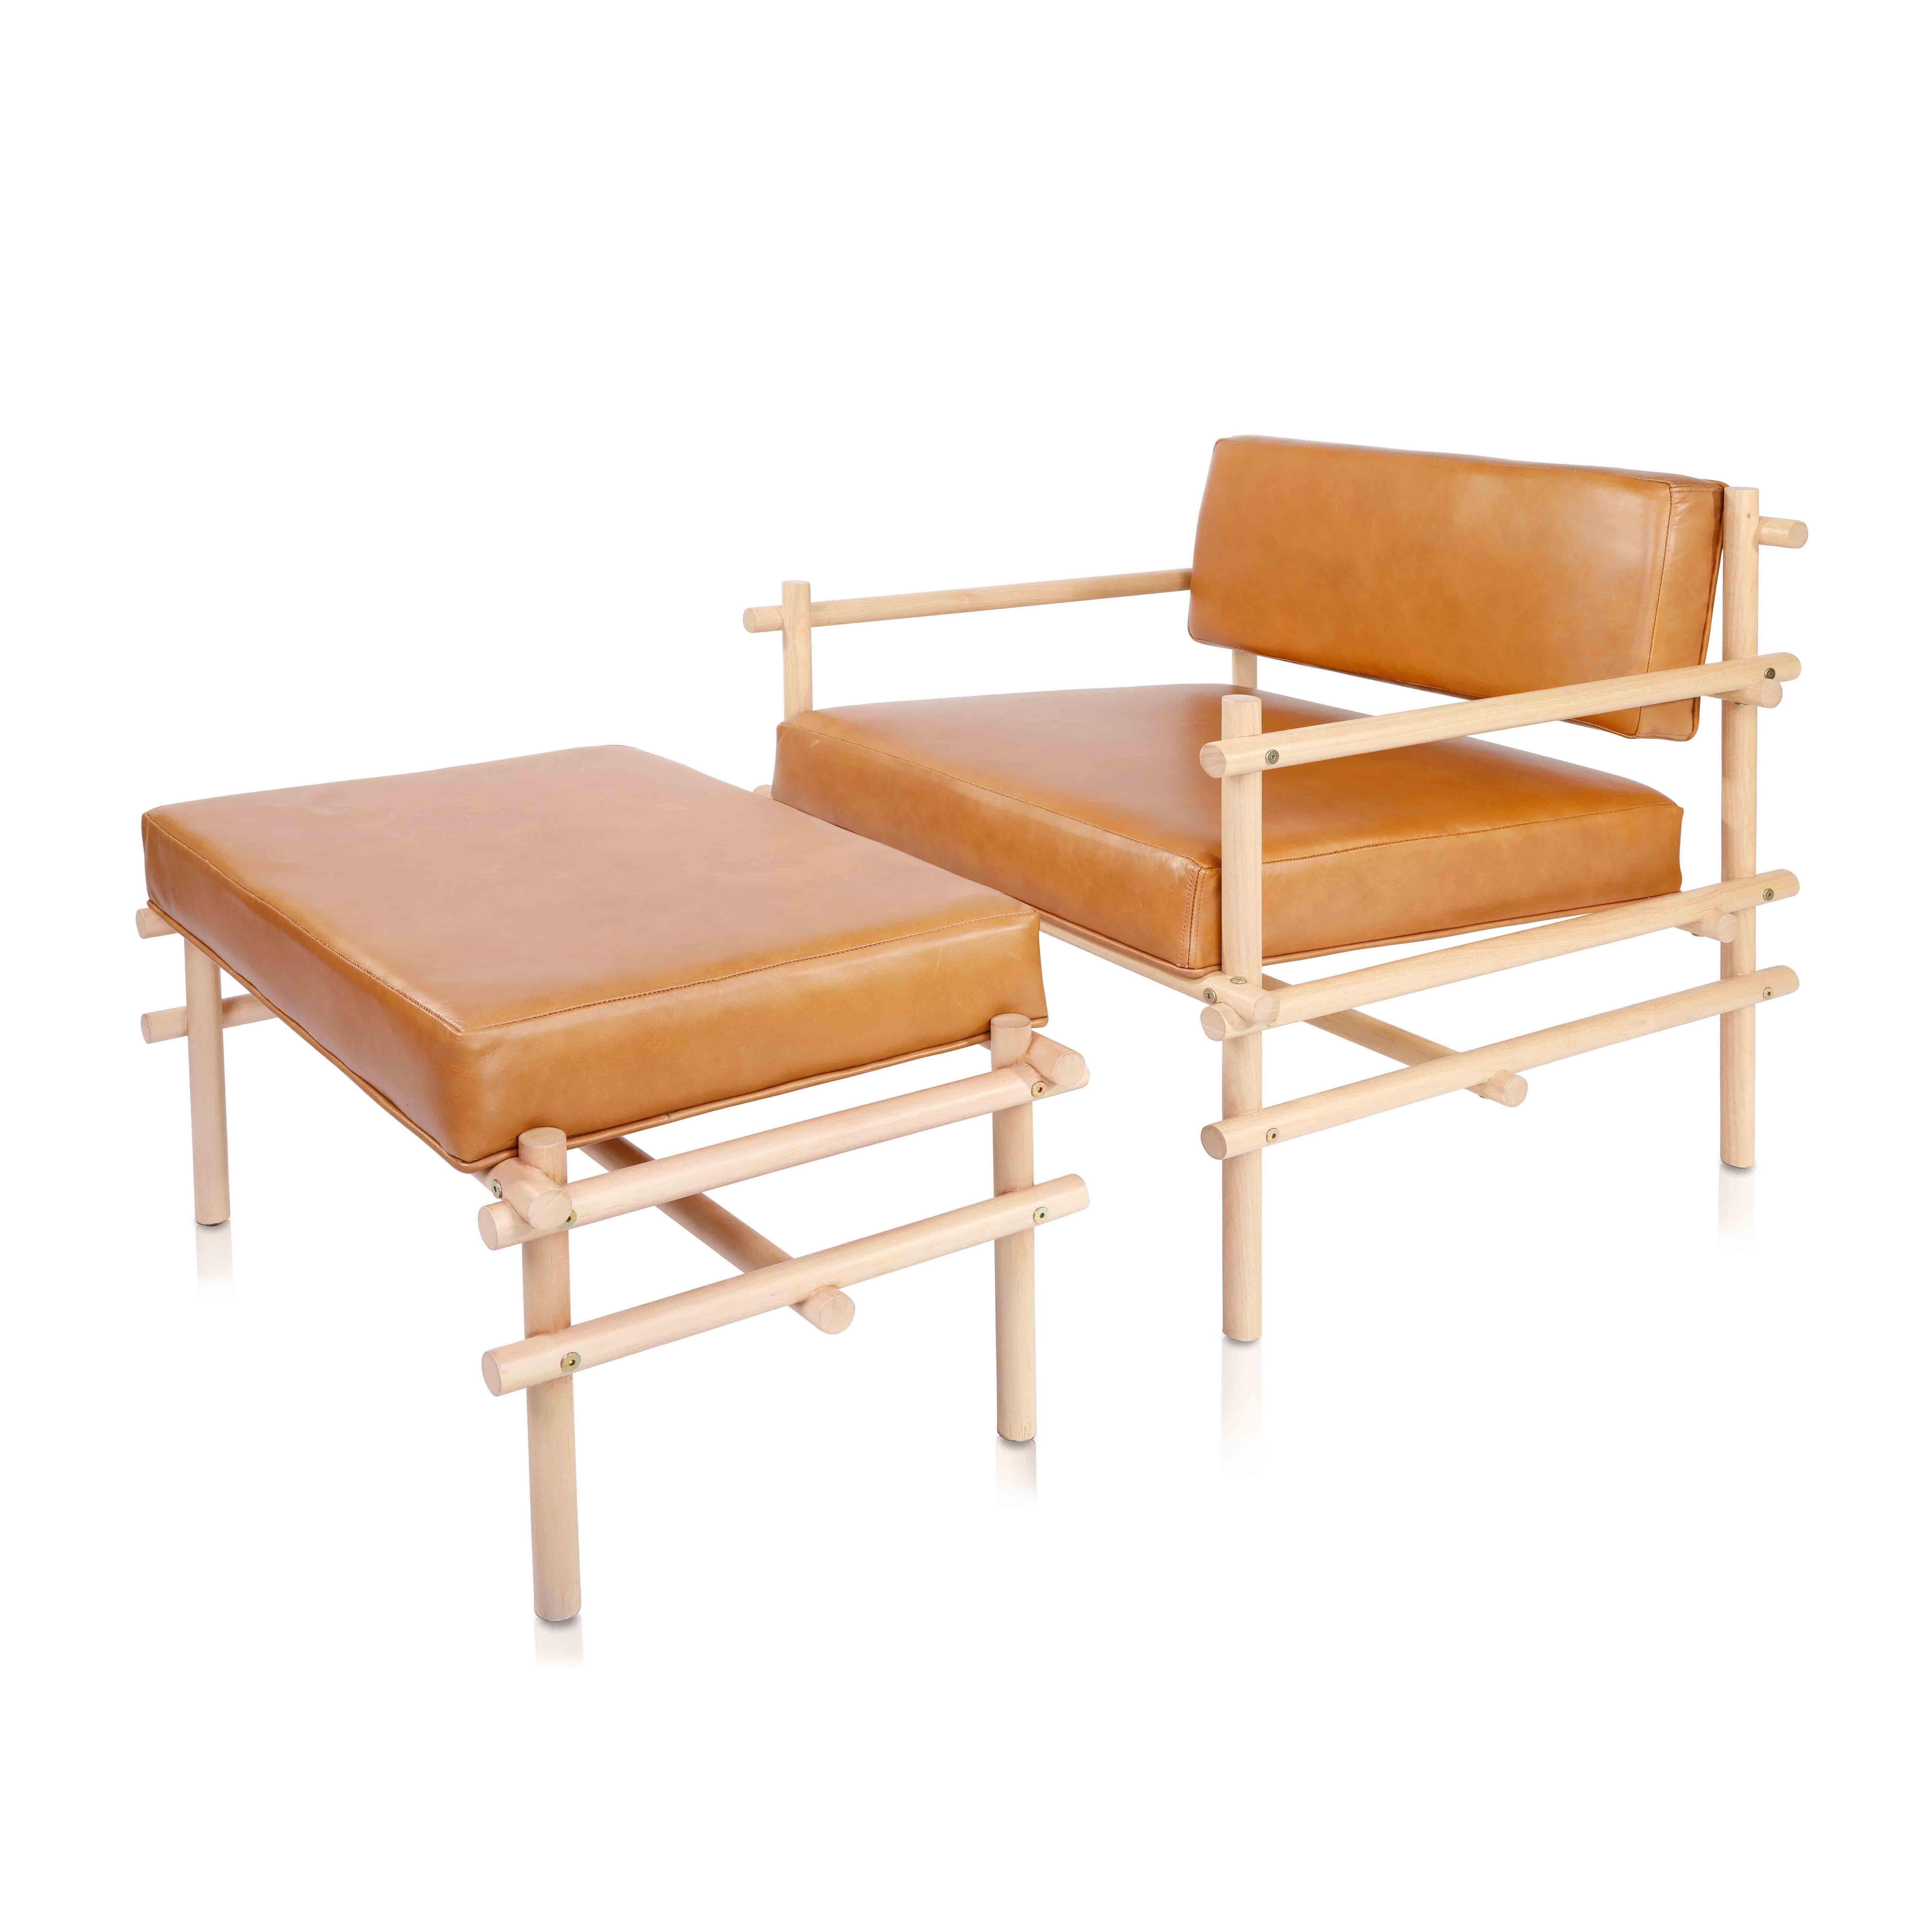 Aus der Pipa-Kollektion haben wir den Sessel mit dem gleichen Prinzip der industriellen Rationalisierung und konstruktiven Einfachheit wie der Stuhl, mit dem diese Linie begann, entwickelt. Aus massivem Tauari-Holz, einem brasilianischen Holz von